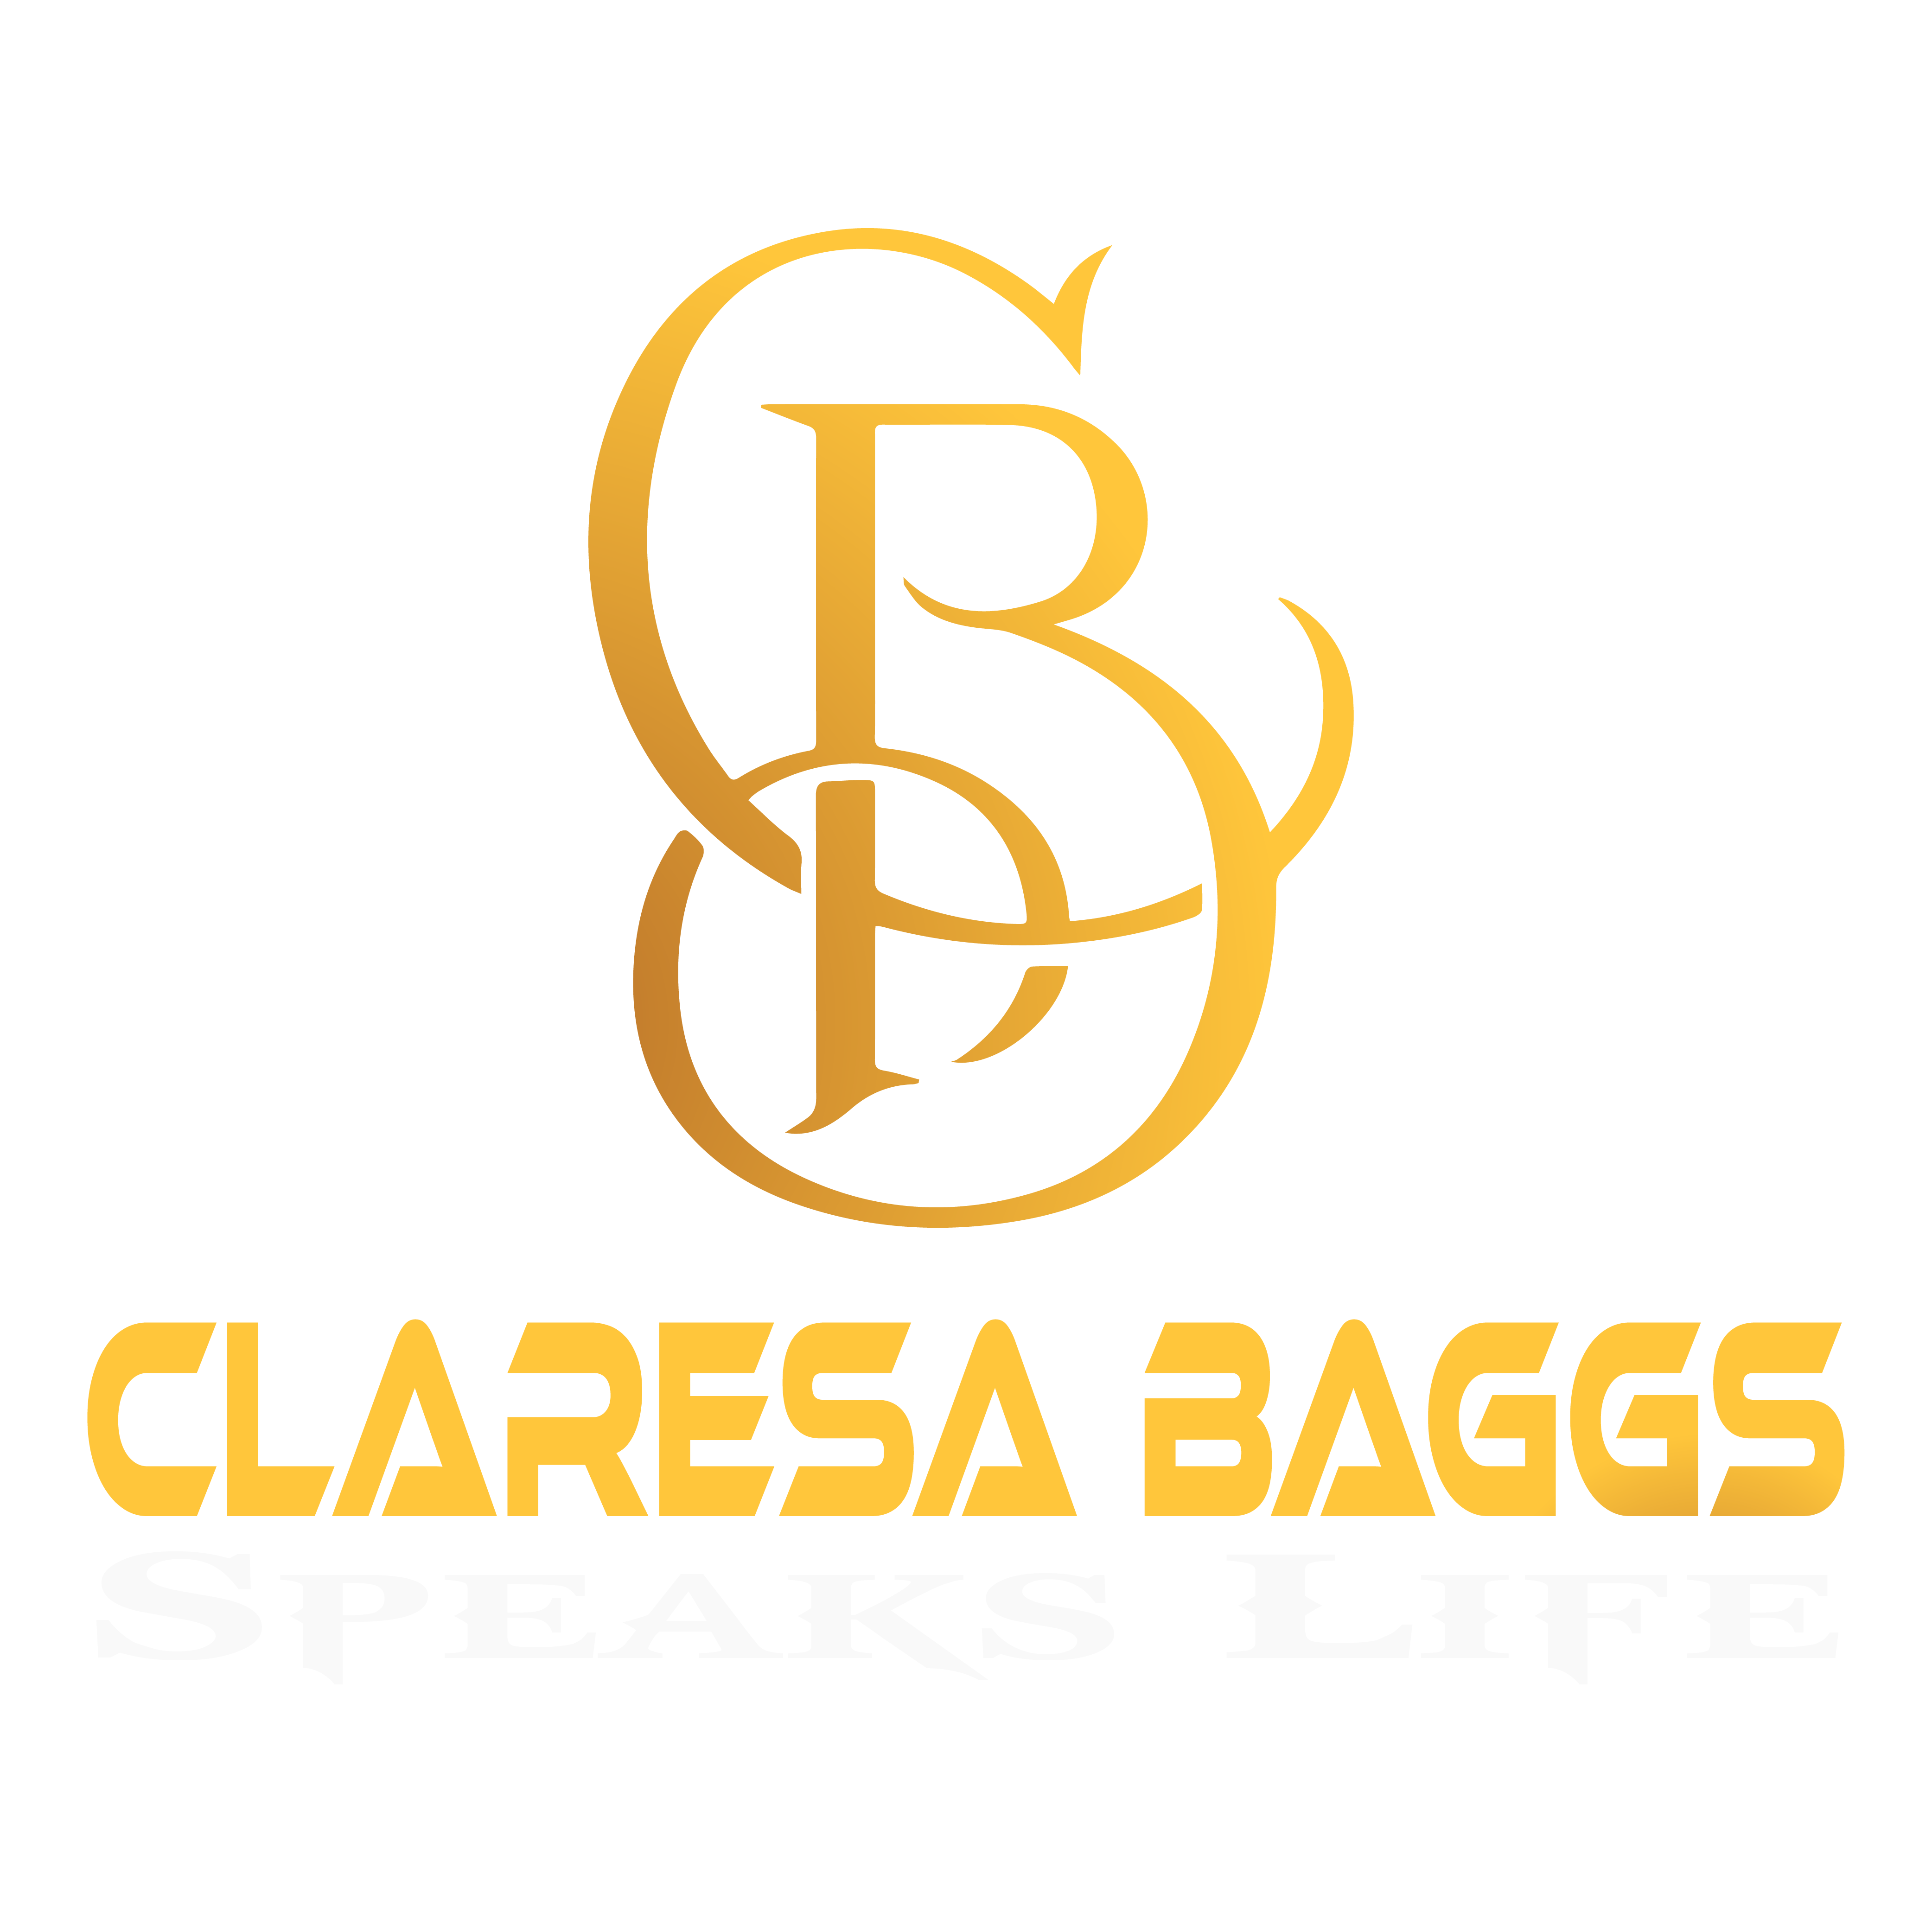 Claresa Baggs Speaks Life